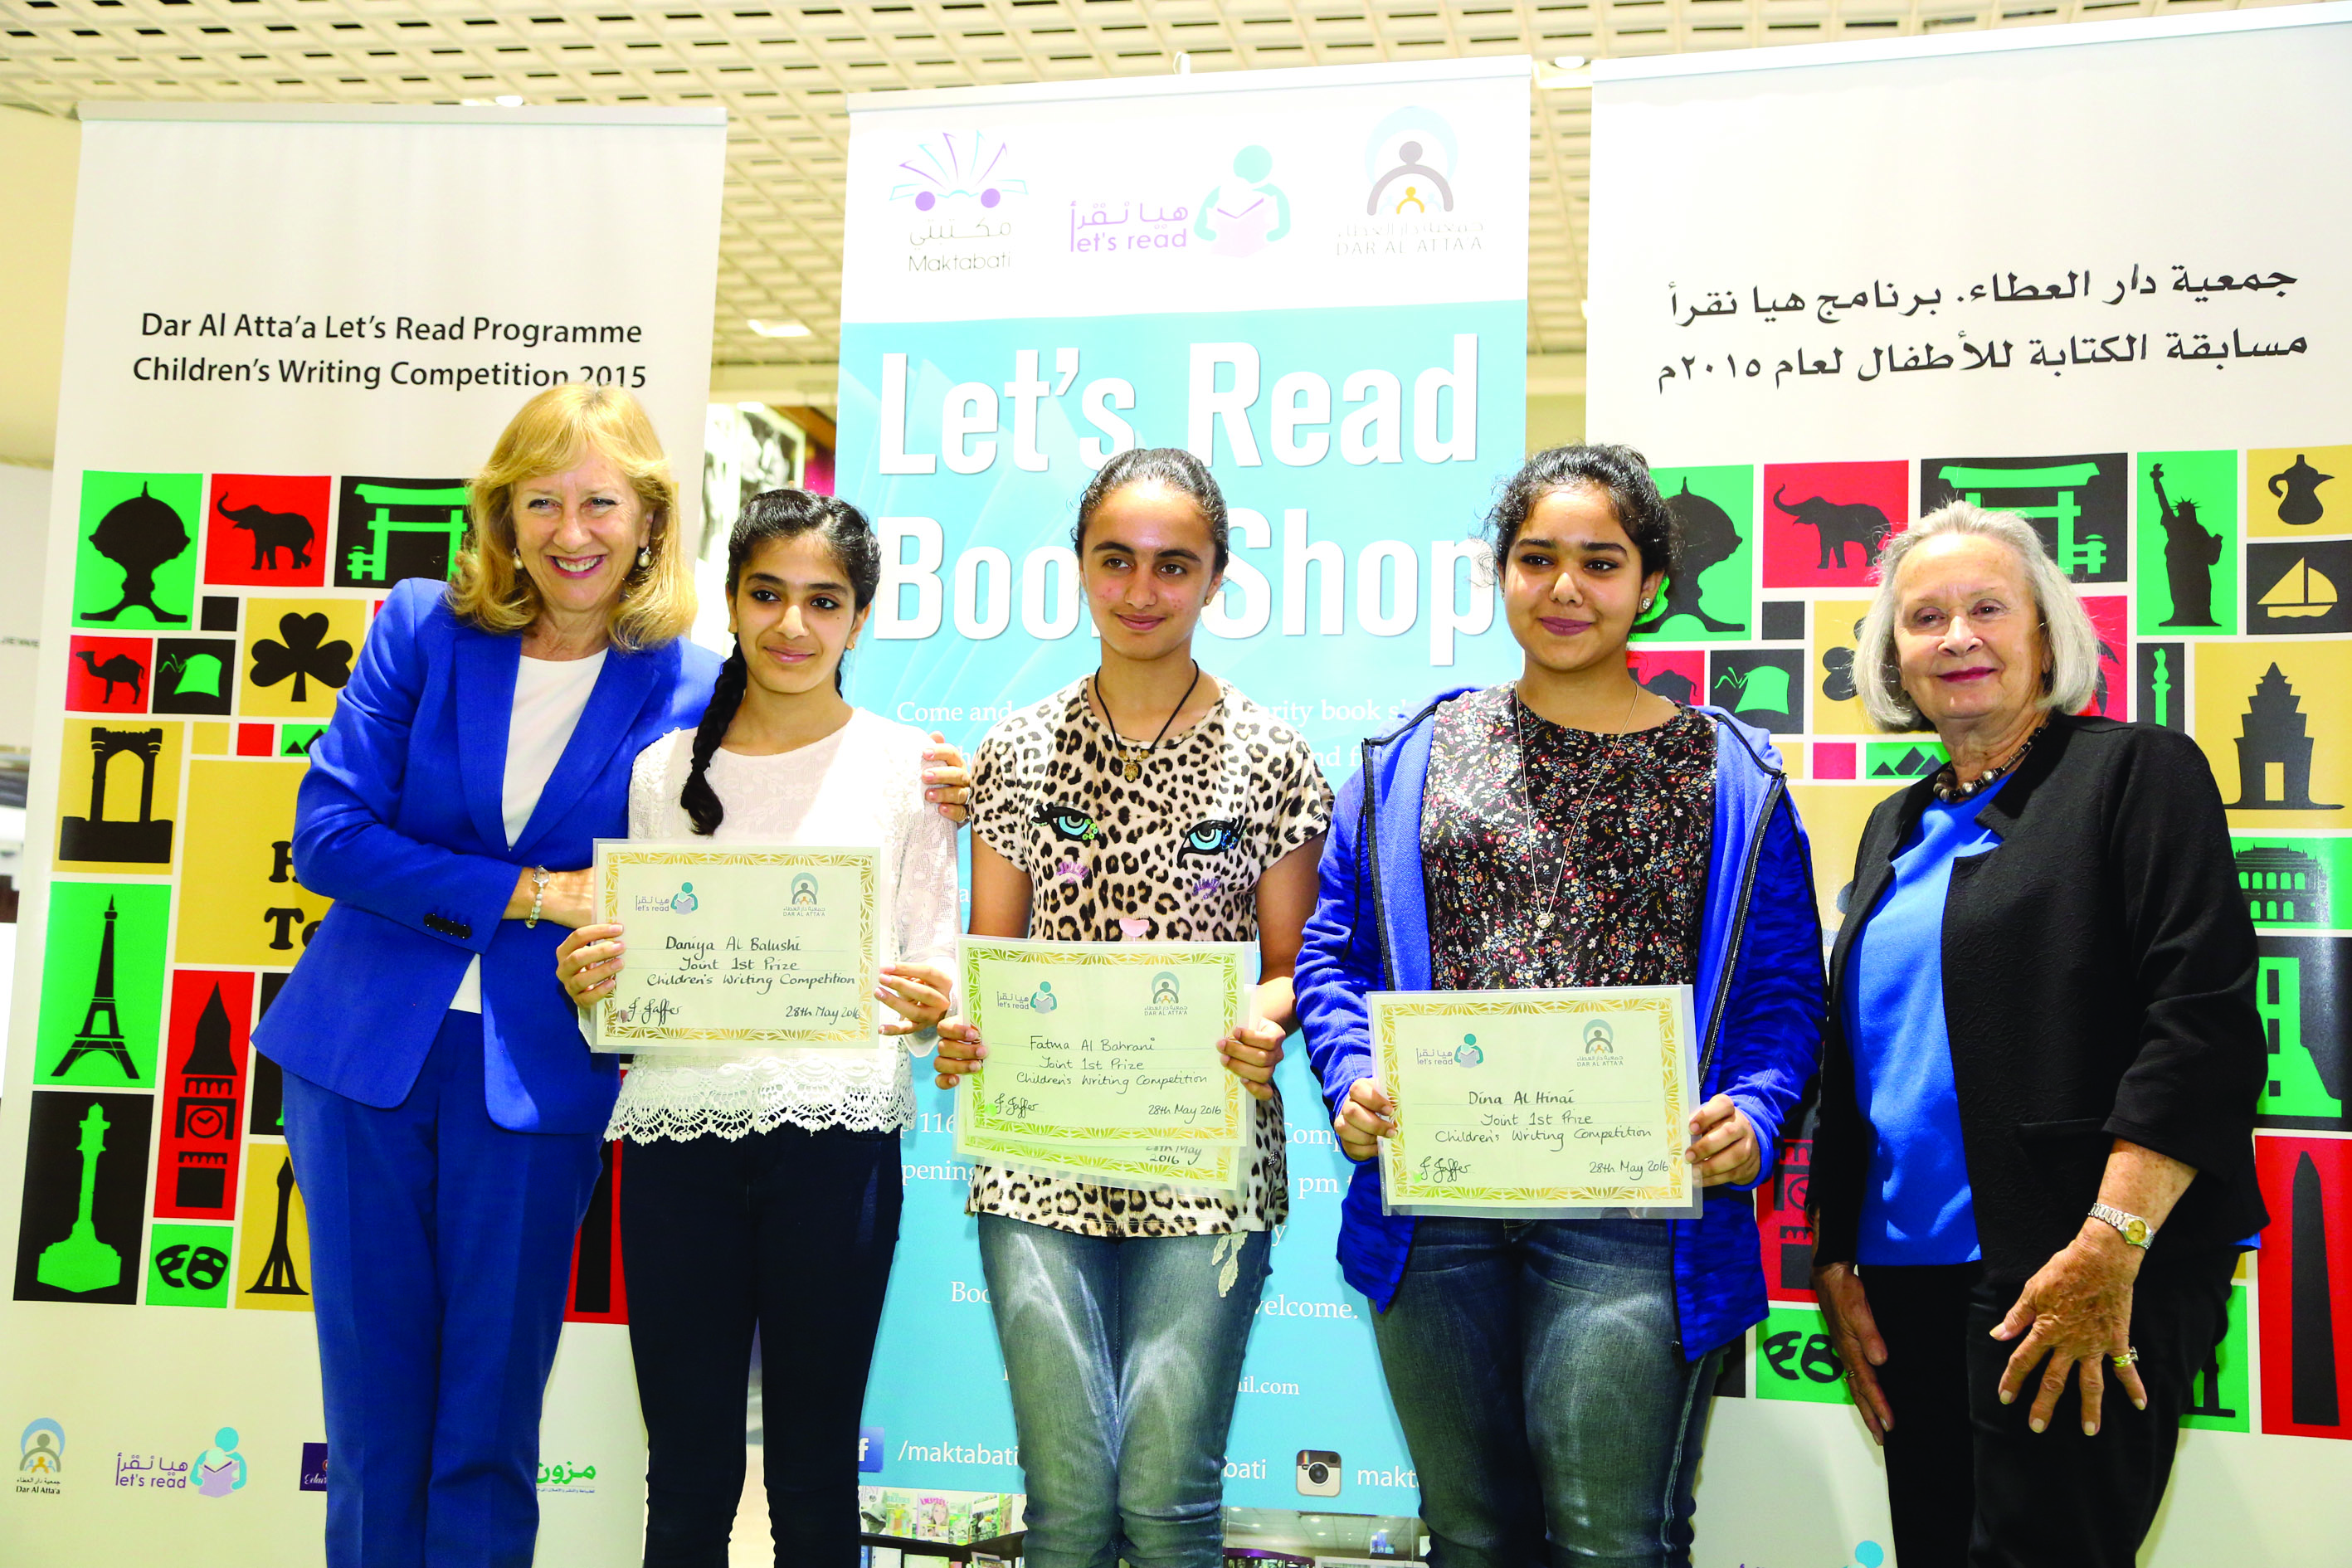 بالصور: حفل تكريم الفائزين في الدورة العاشرة من مسابقة الكتابة التي تحتضنها جمعية دار العطاء سنويا